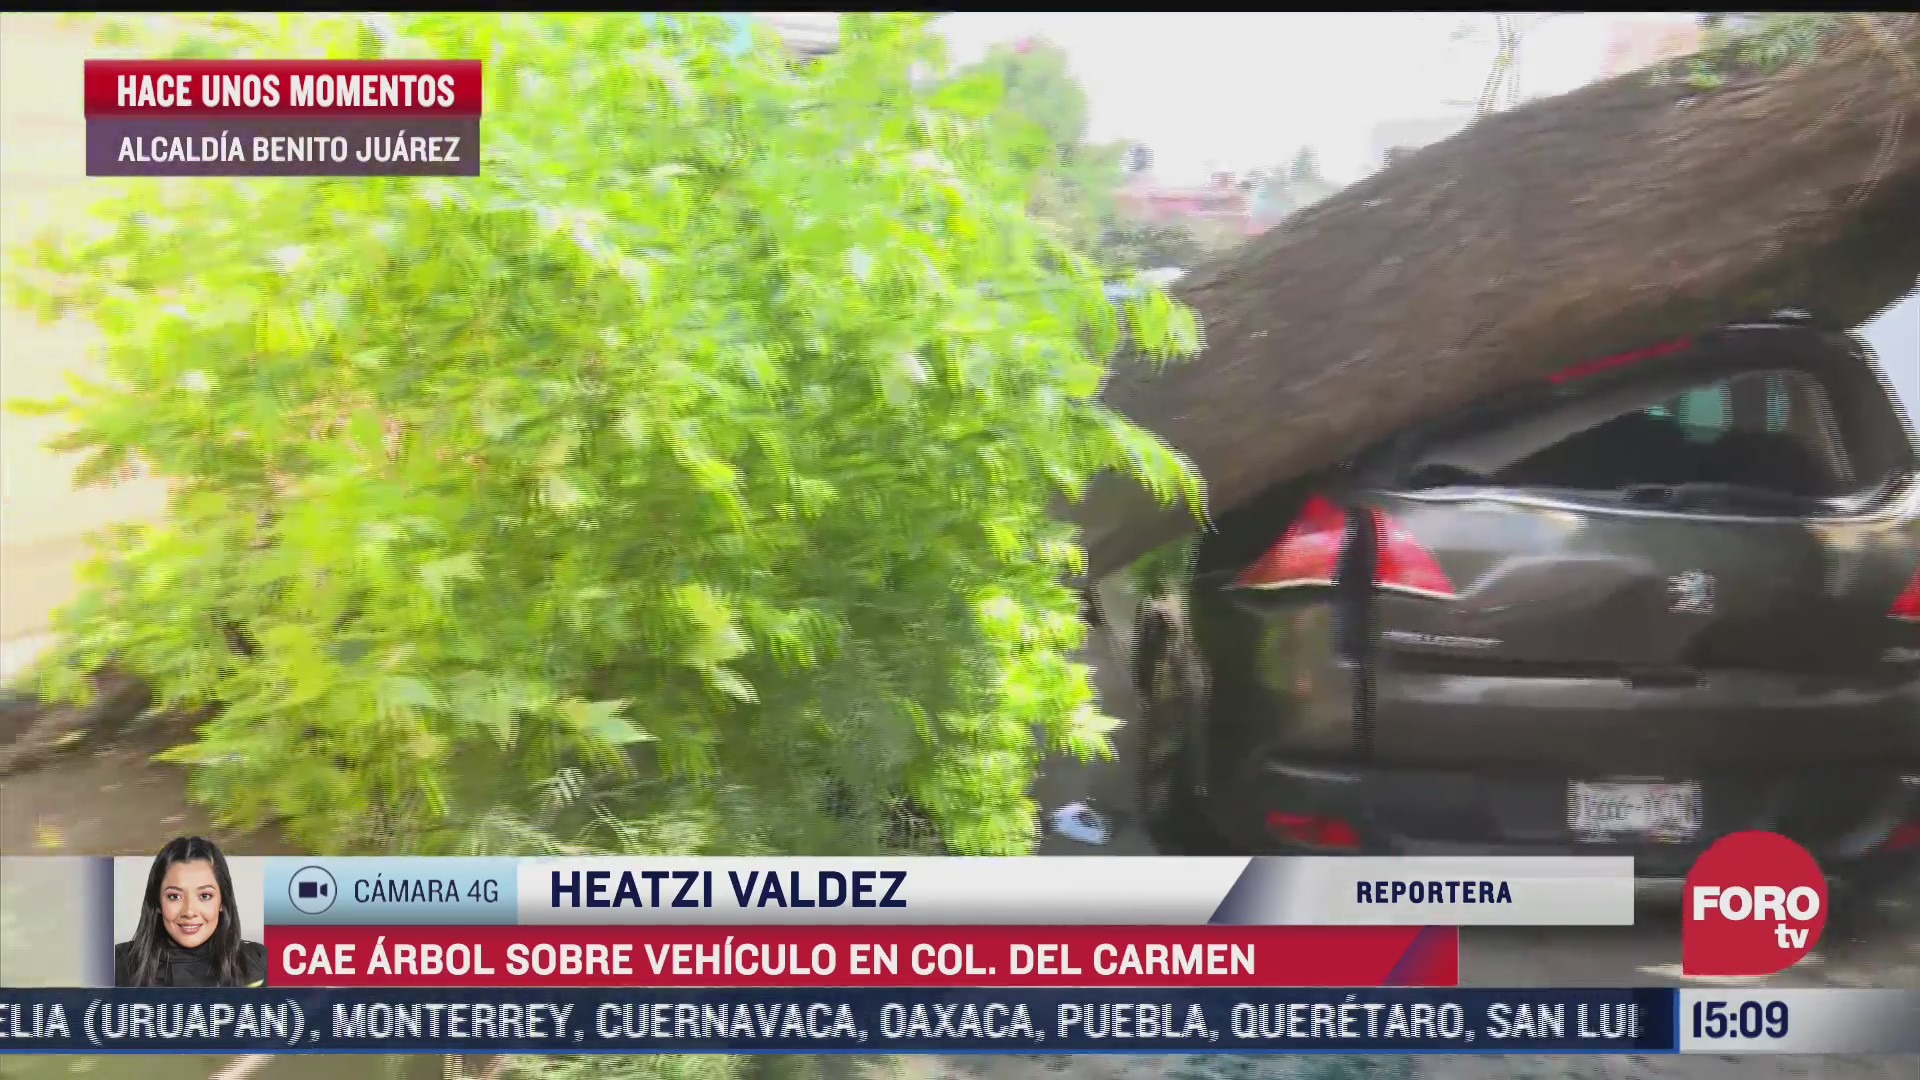 Cae árbol sobre vehículo en alcaldía Benito Juárez